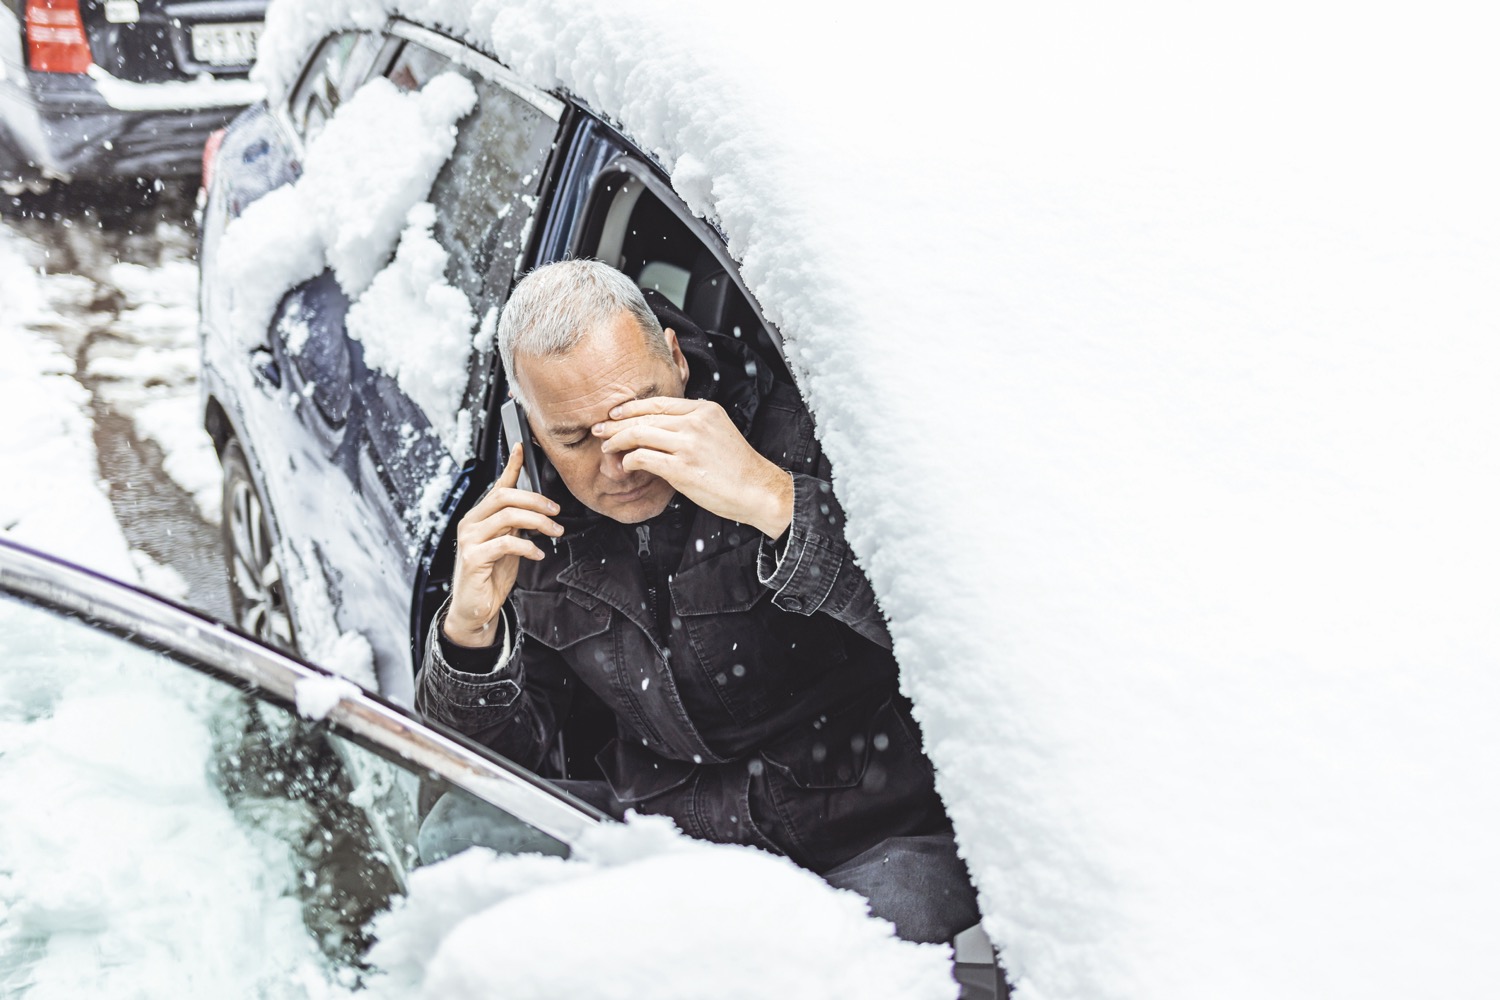 Il ghiaccio rovina i vetri auto? Ecco come proteggerli dal freddo!